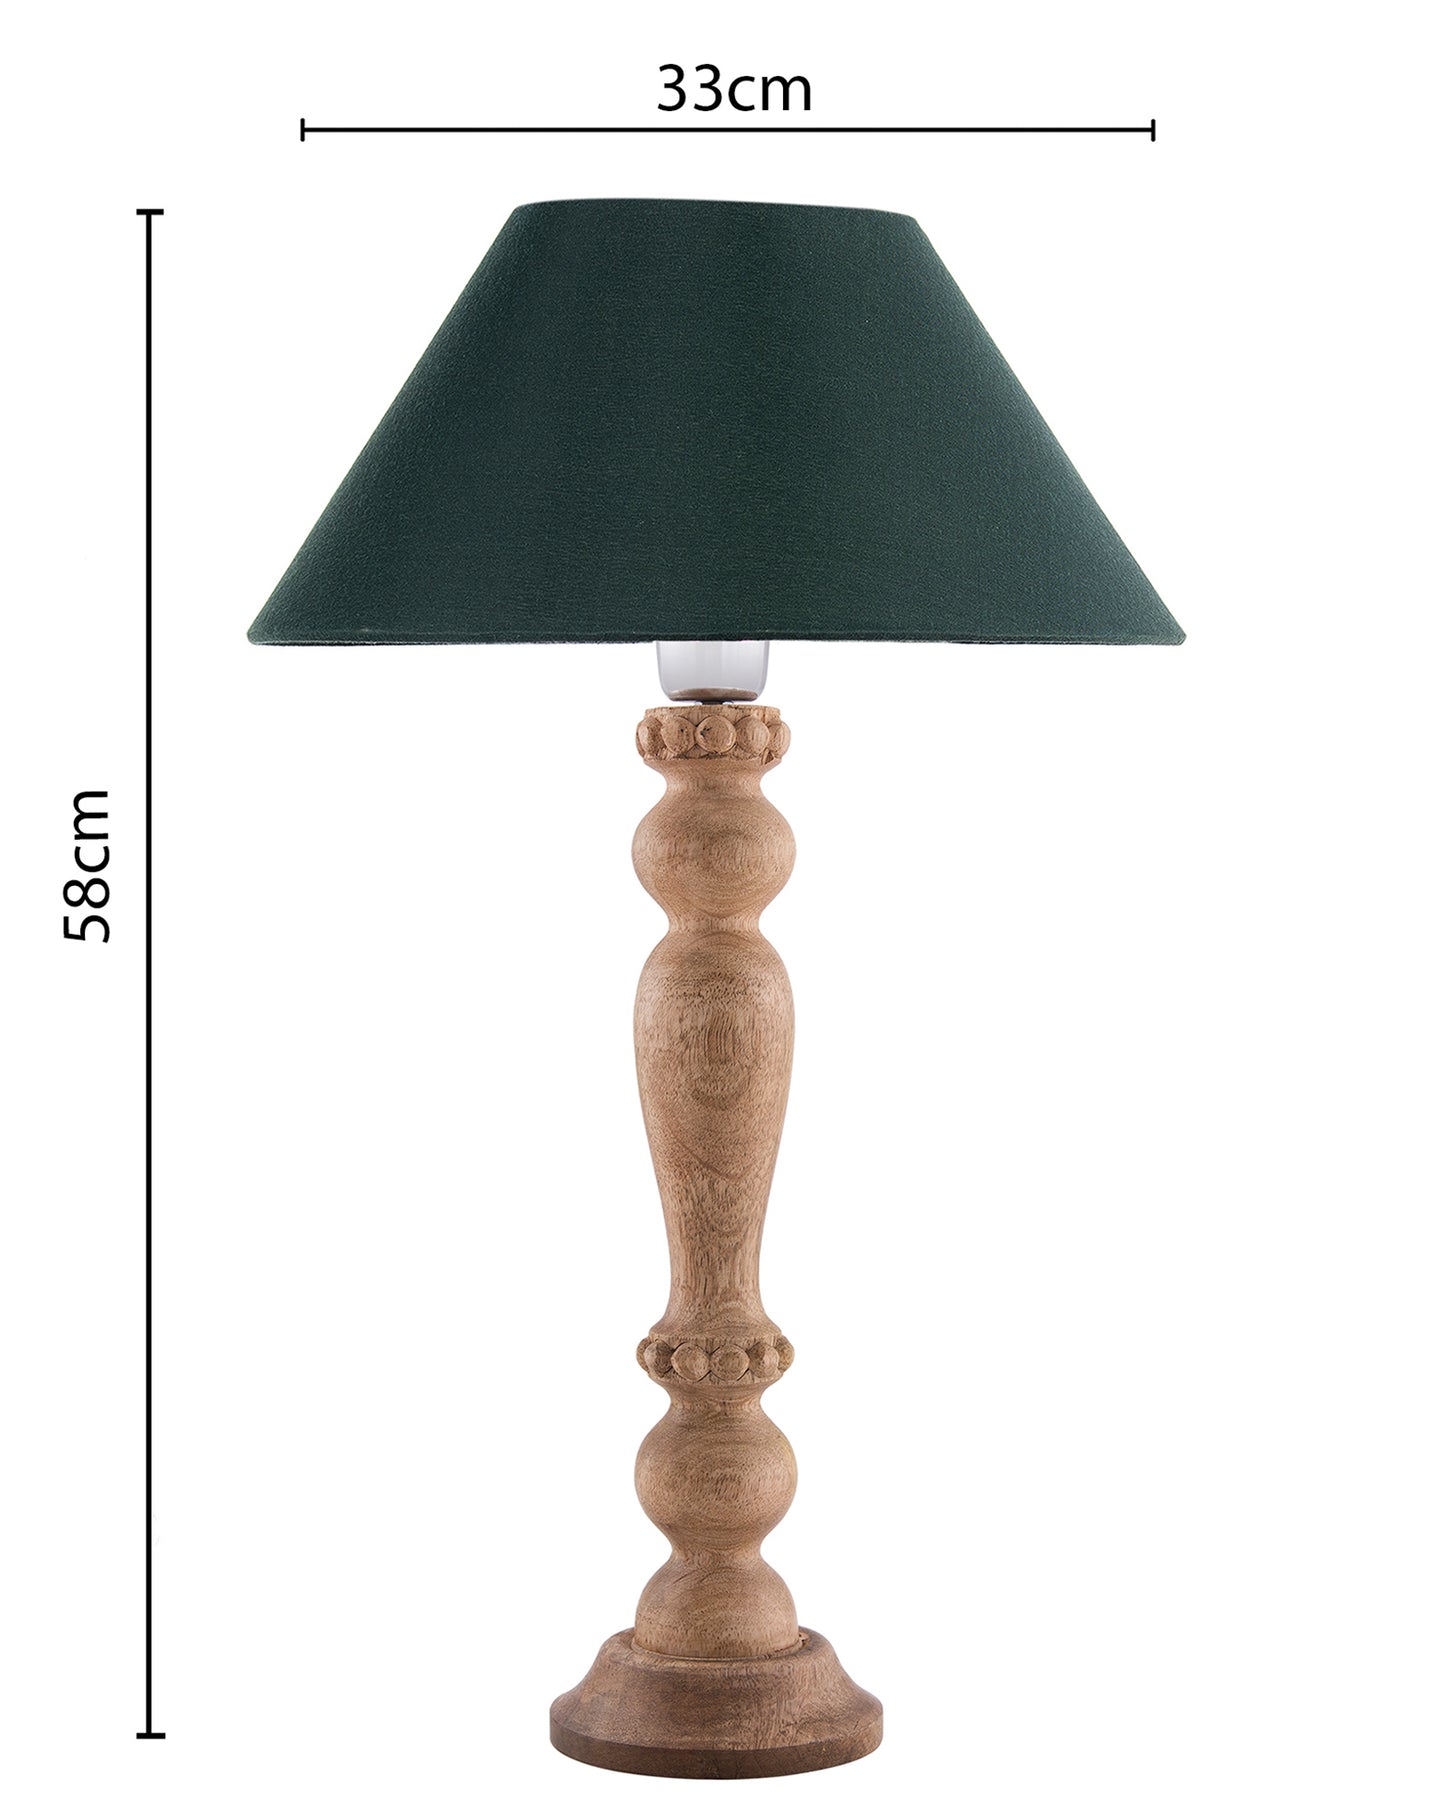 Eureka Polka Natural Wood Table Lamp With Shade